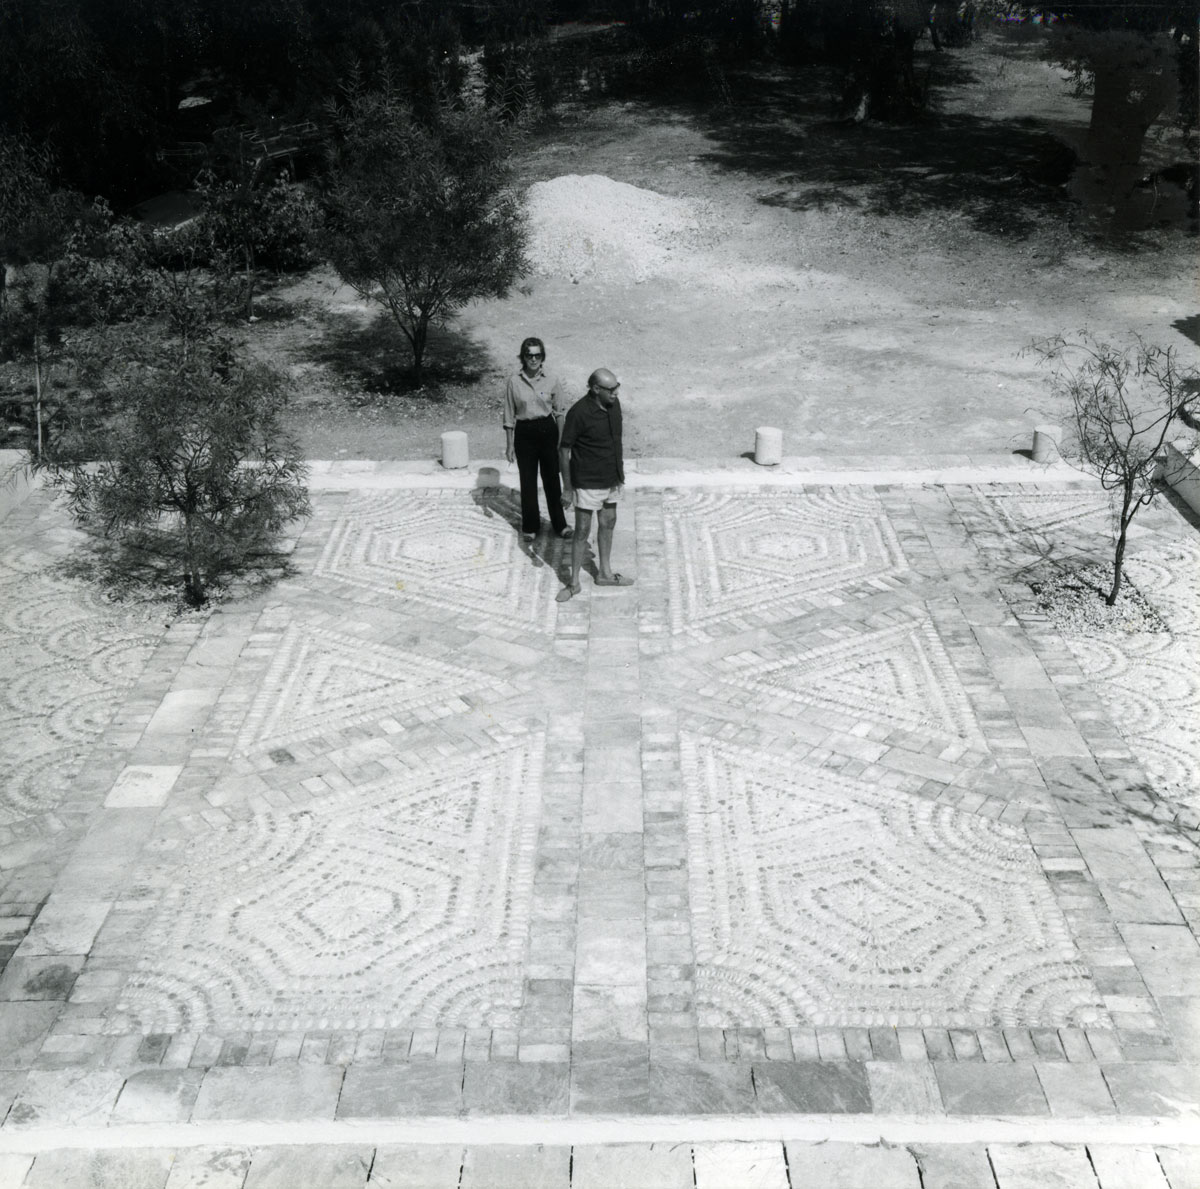 Ο Ν. Χατζηκυριάκος-Γκίκας και η Barbara Γκίκα στην αυλή του σπιτιού της Κέρκυρας, 1973. Φωτογραφικό αρχείο Μουσείου Μπενάκη-Πινακοθήκης Γκίκα.